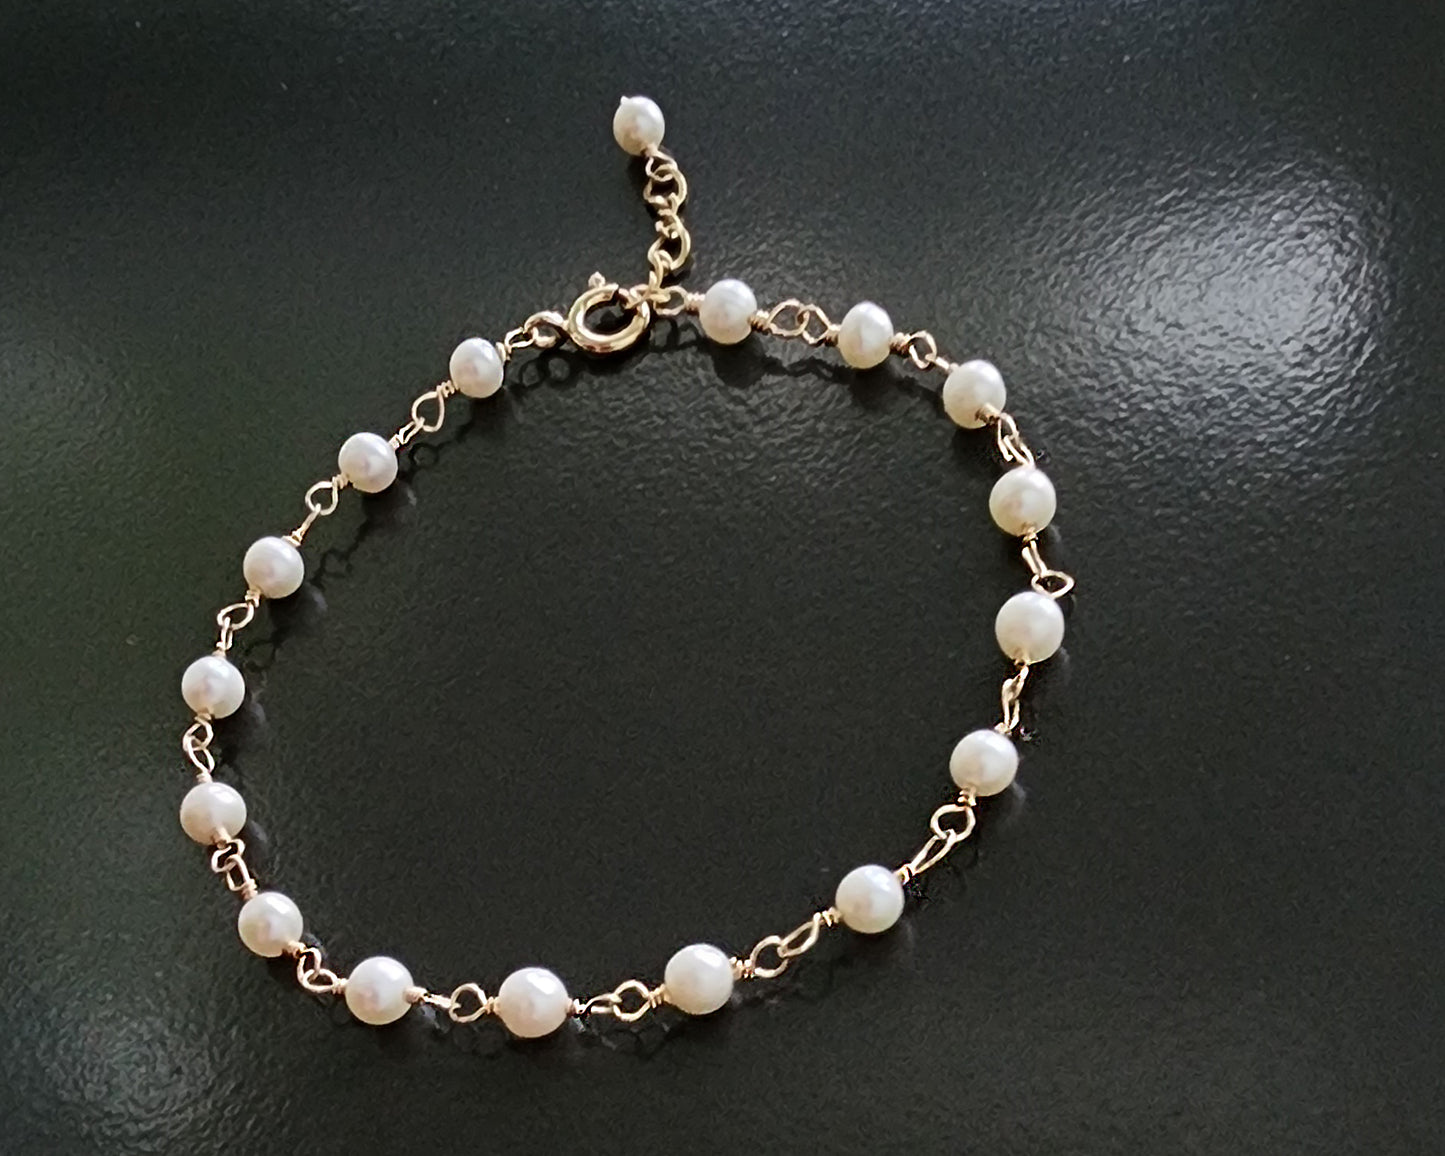 Deluxe Freshwater Cultured Pearl Anklet-Ankle Bracelet-14k Gold Filled